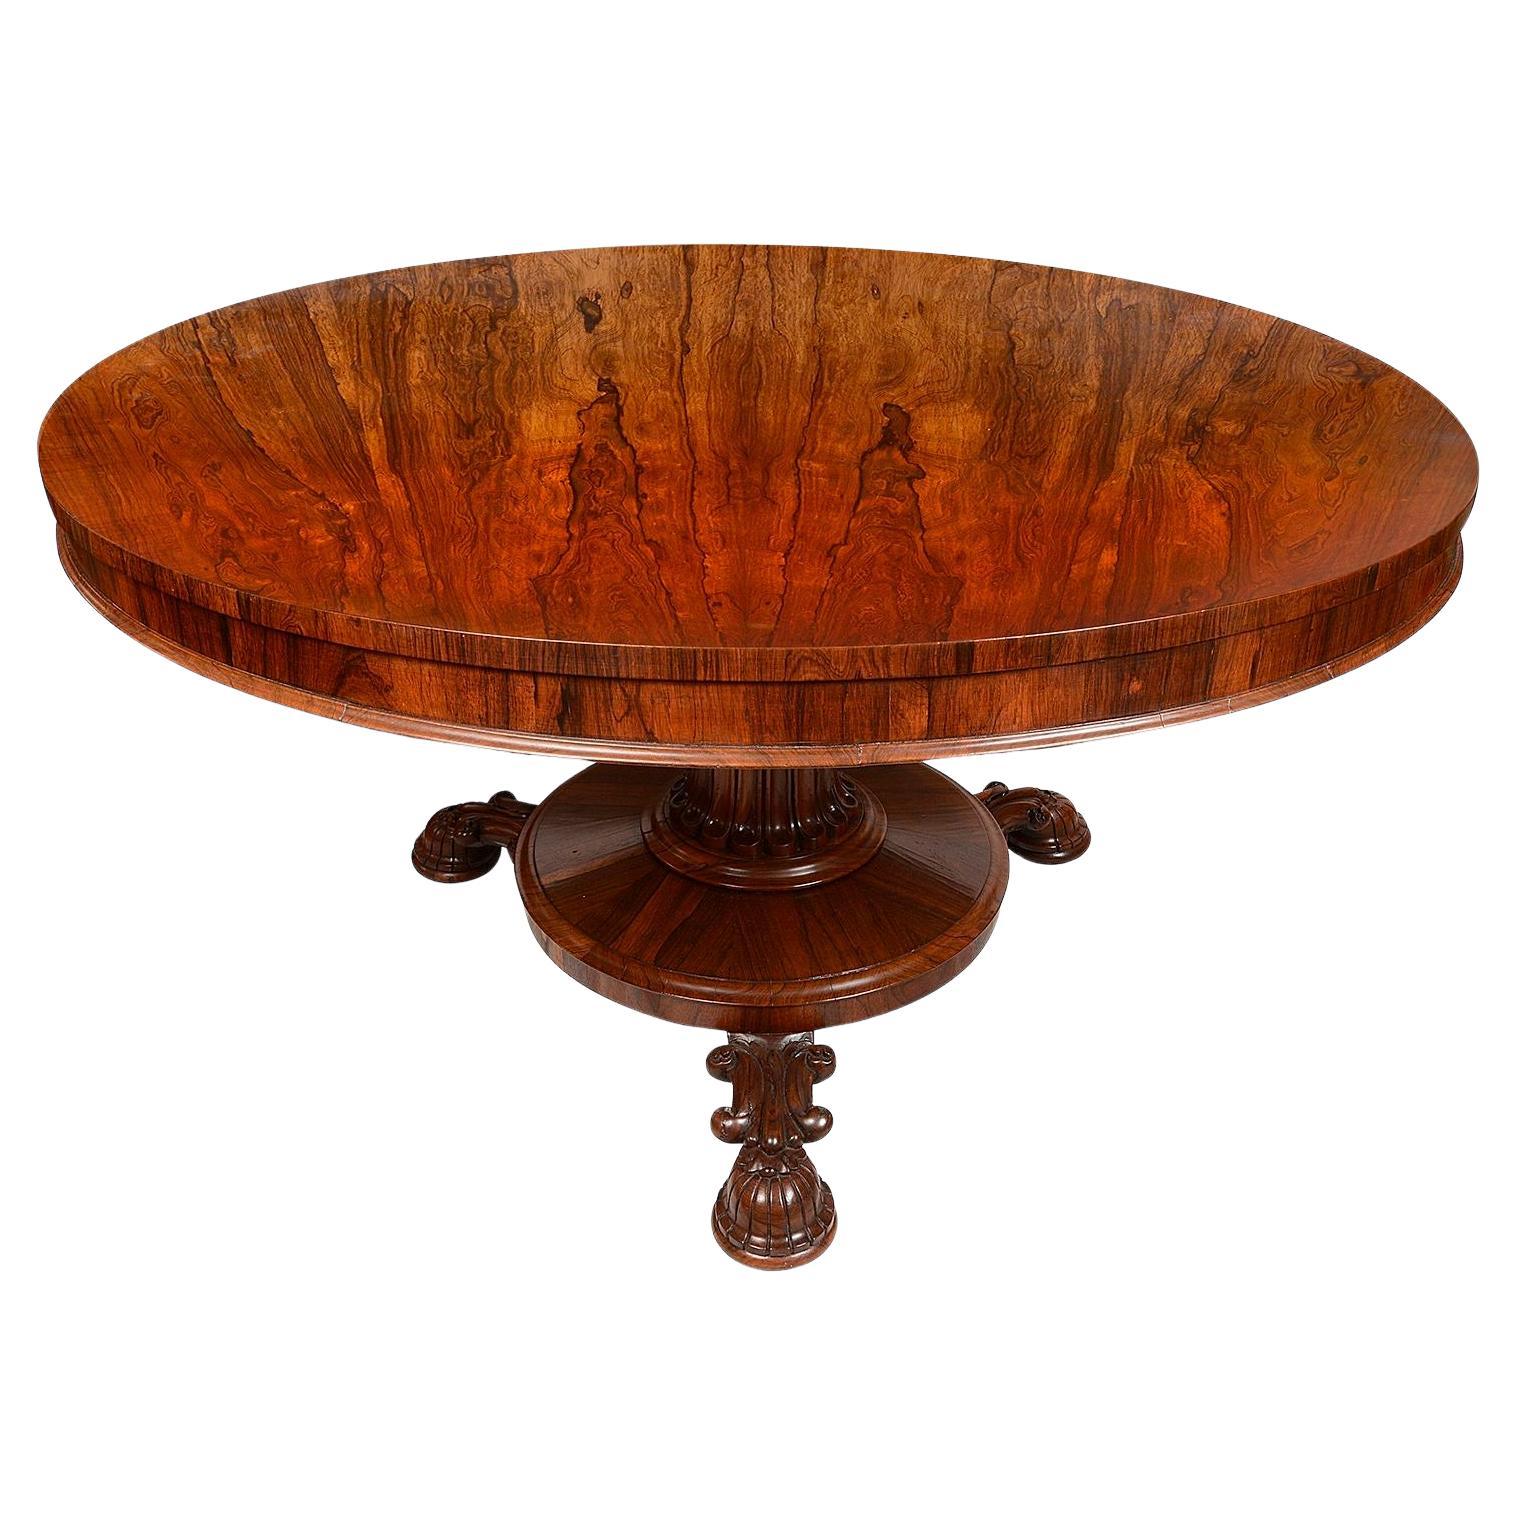 Table de salle à manger / table centrale en bois de rose de la fin de la période Régence, vers 1820-40